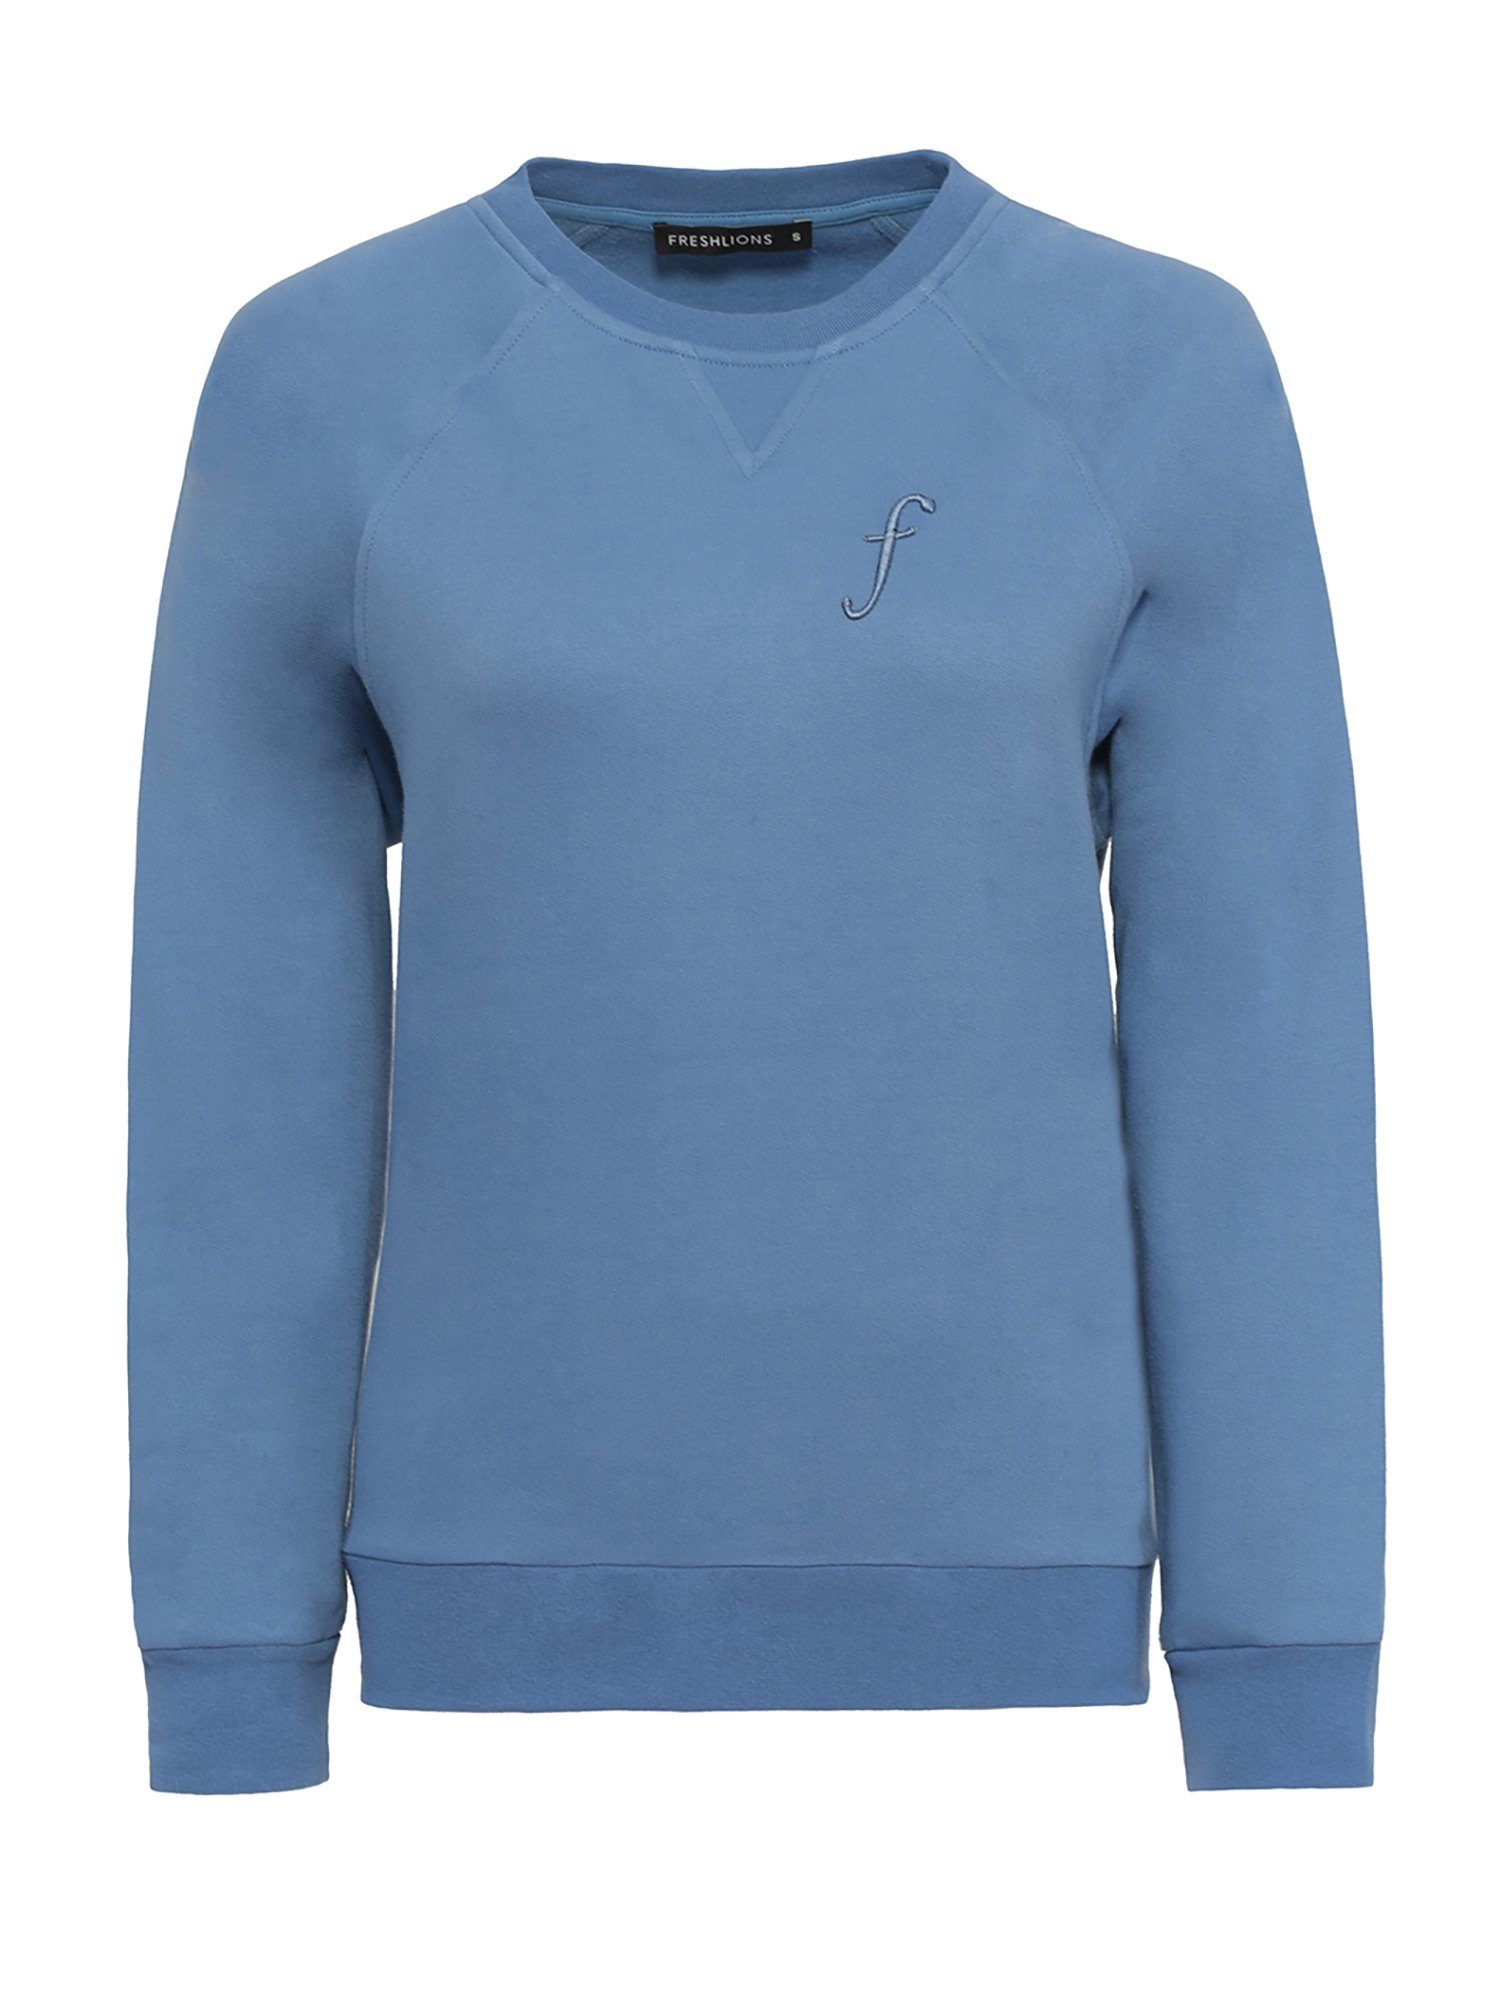 Freshlions Kurzweste Freshlions Sweatshirt F Embroidery blau